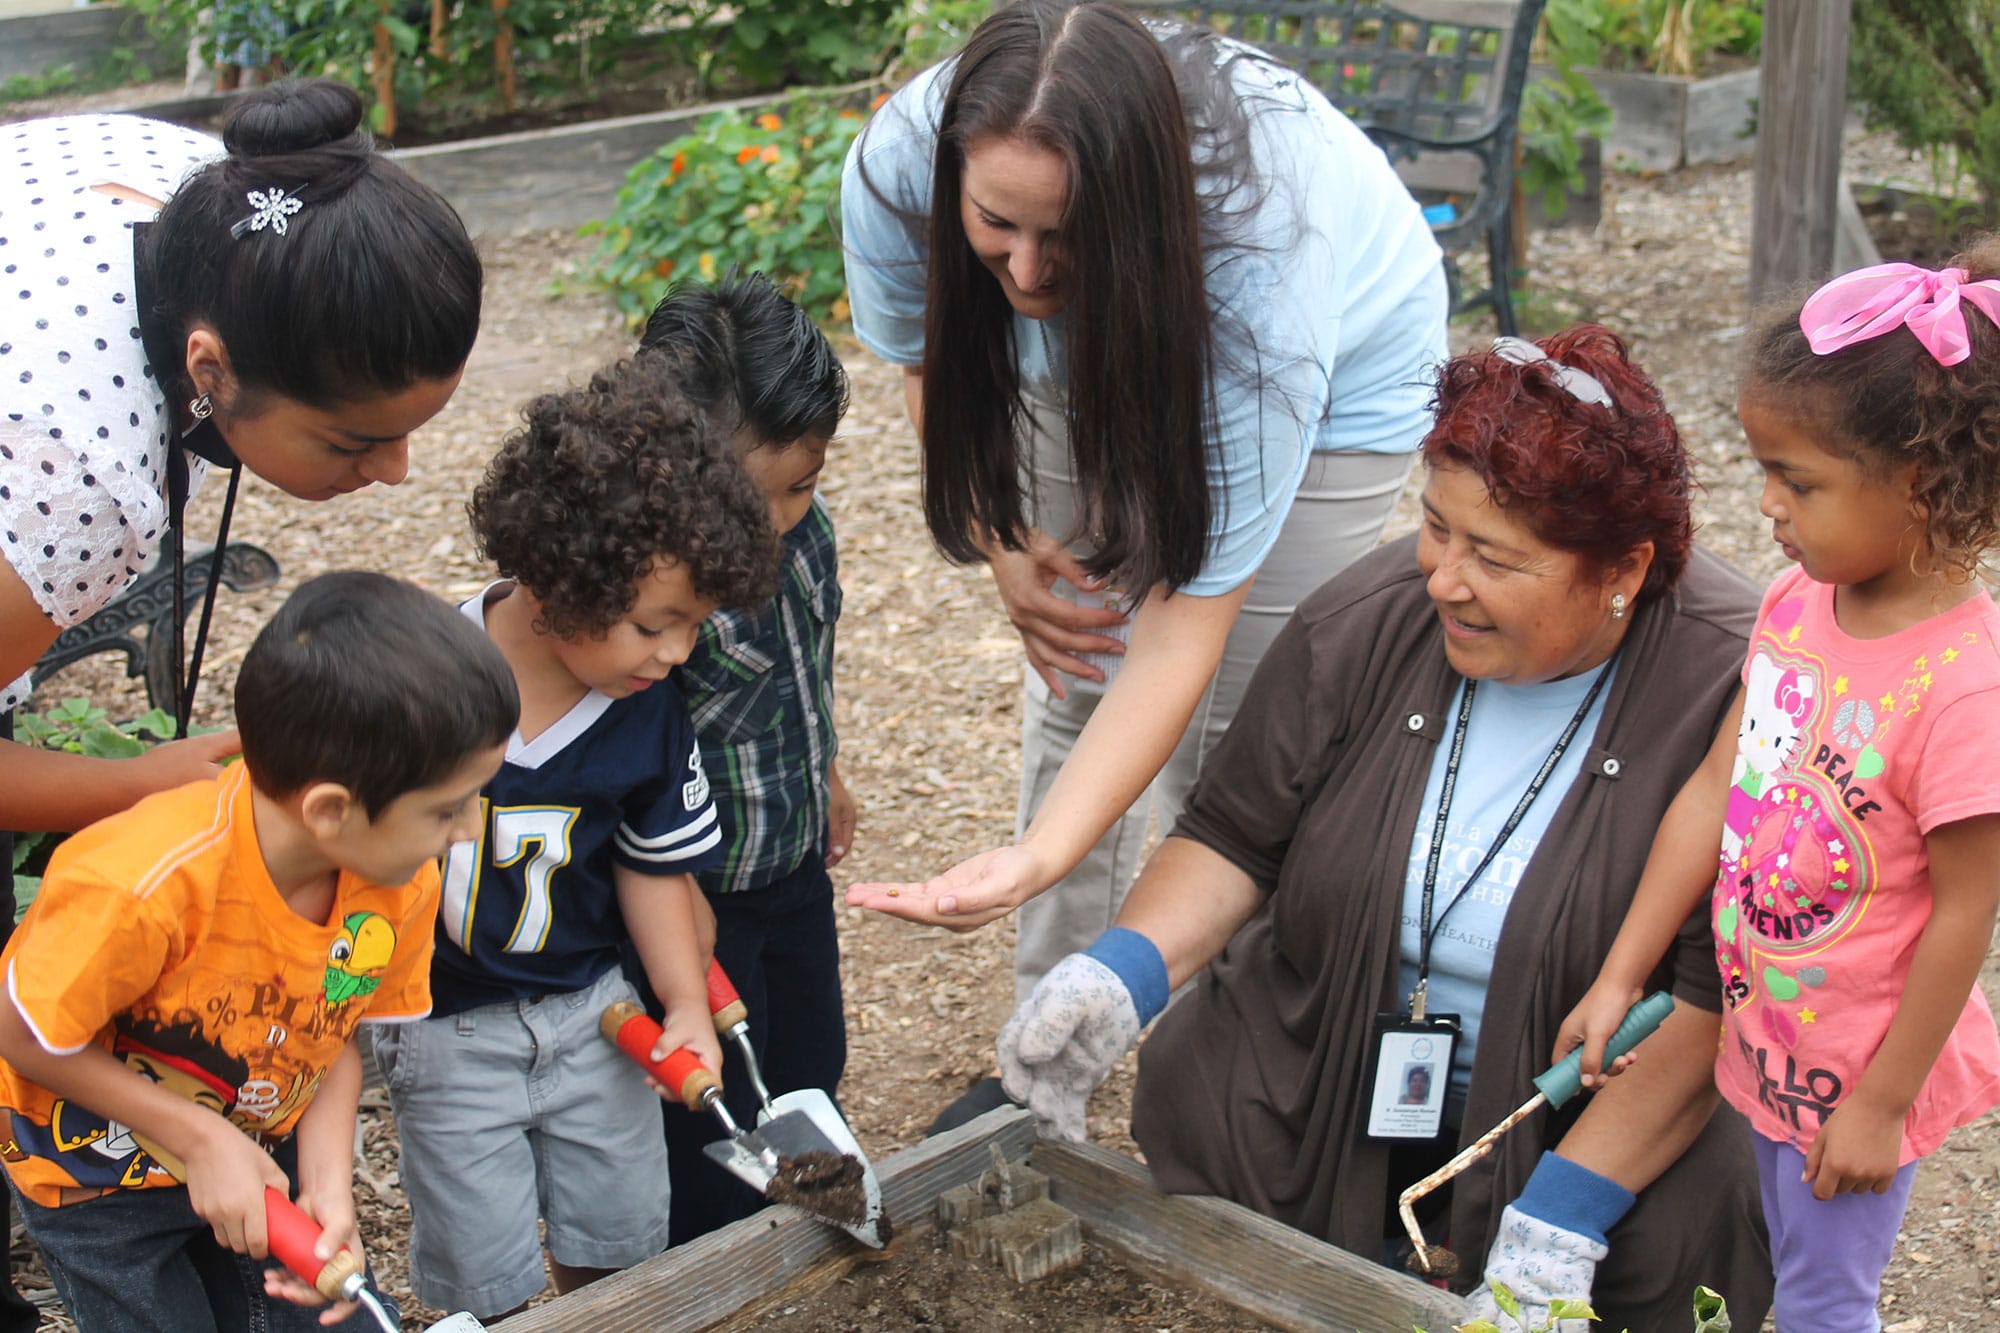 Adults help children in a garden